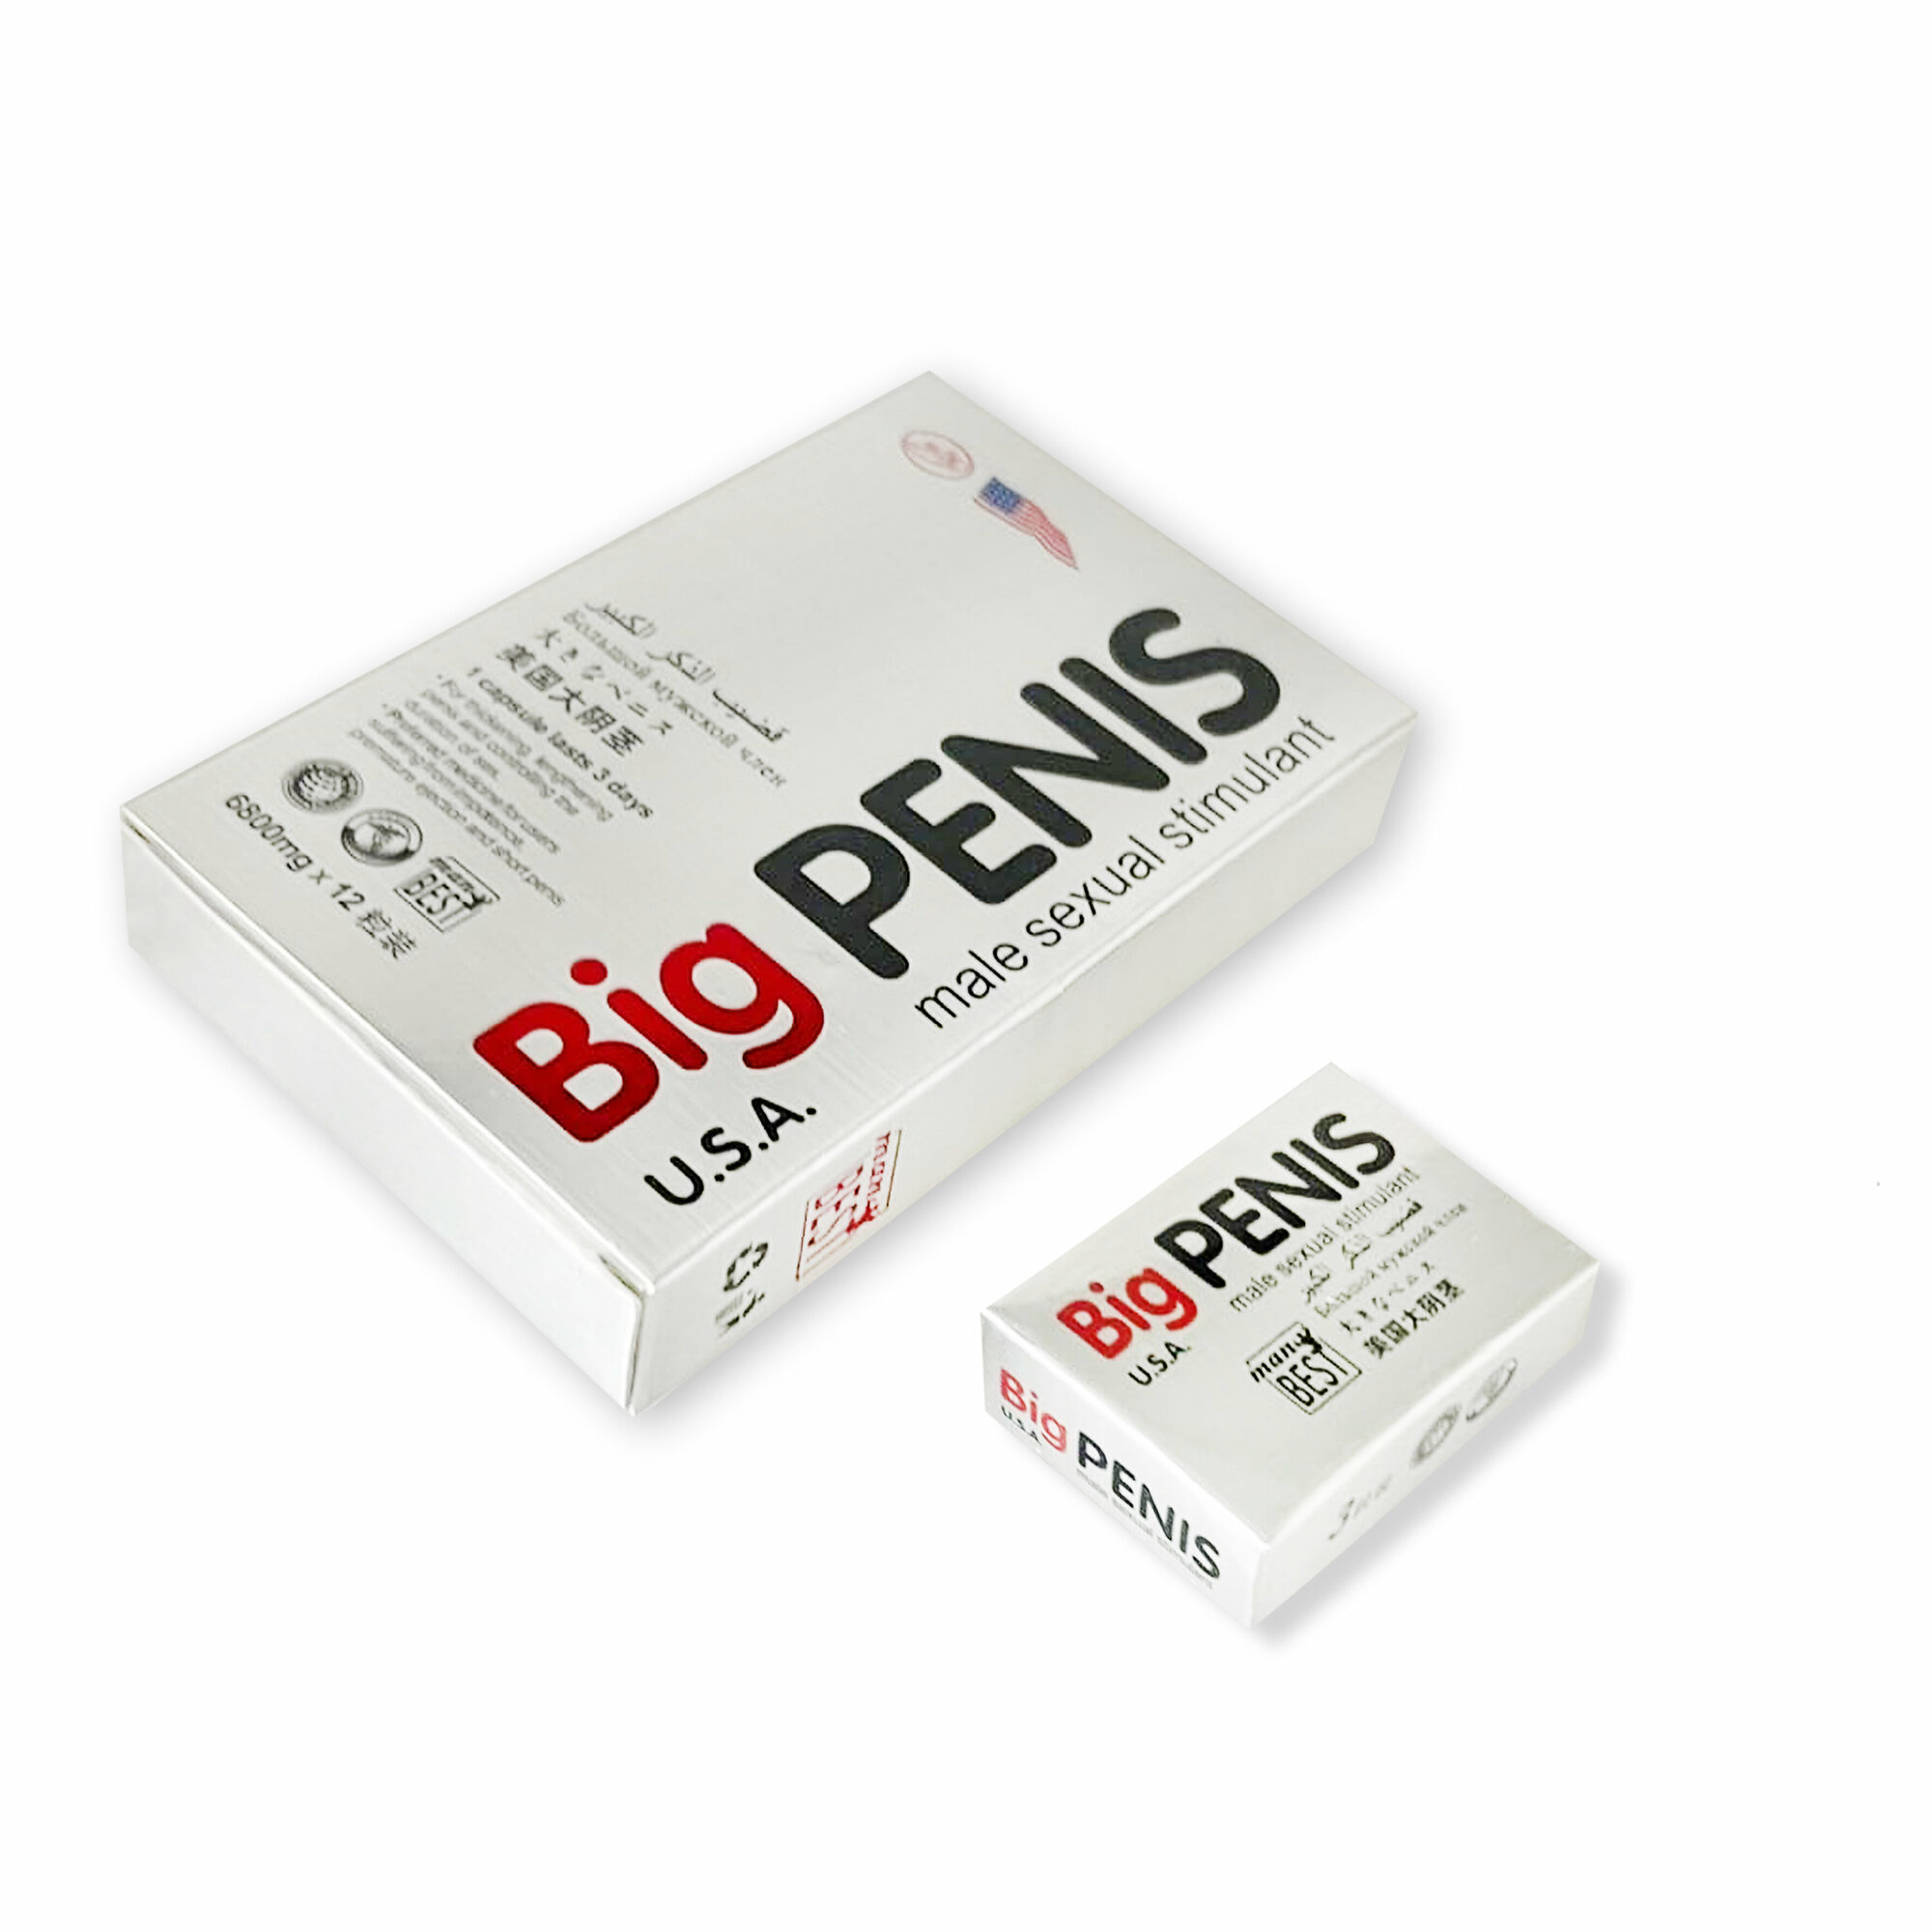 Big penis Биг пенис виагра для мужчин возбудитель 3 капсулы